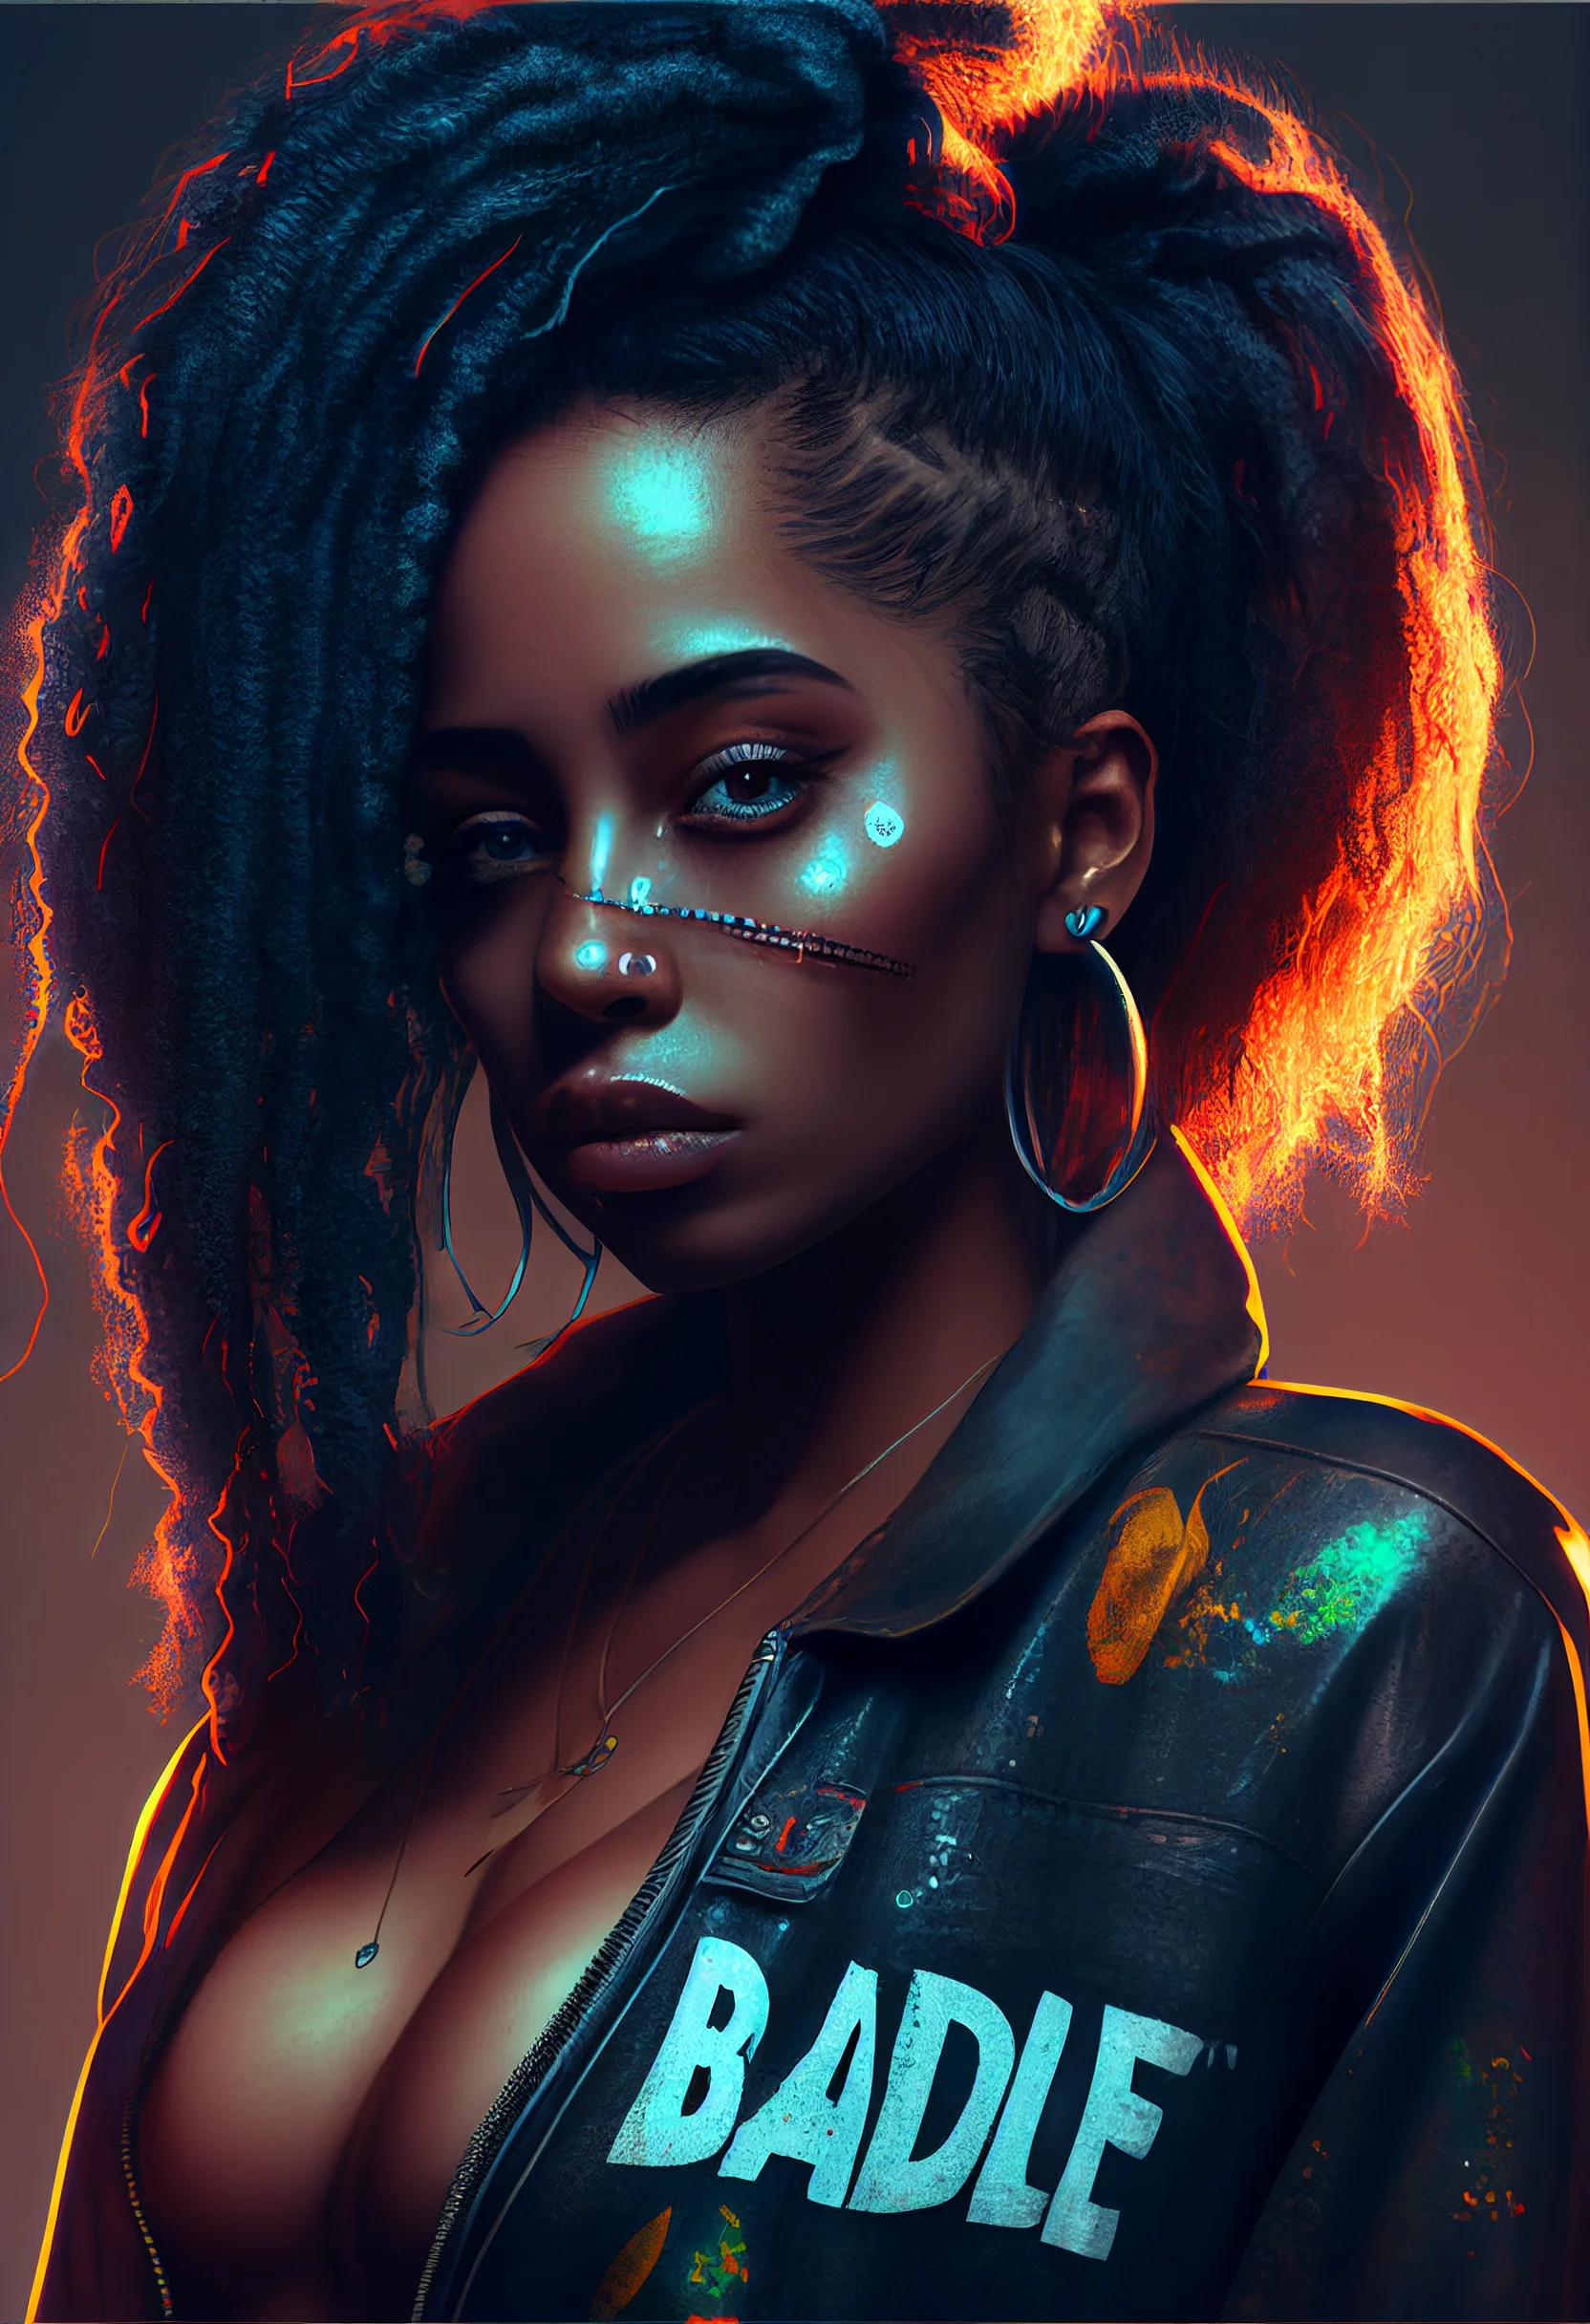 Cyberpunk girl with glowing neon hair and piercings. - Makeup, baddie